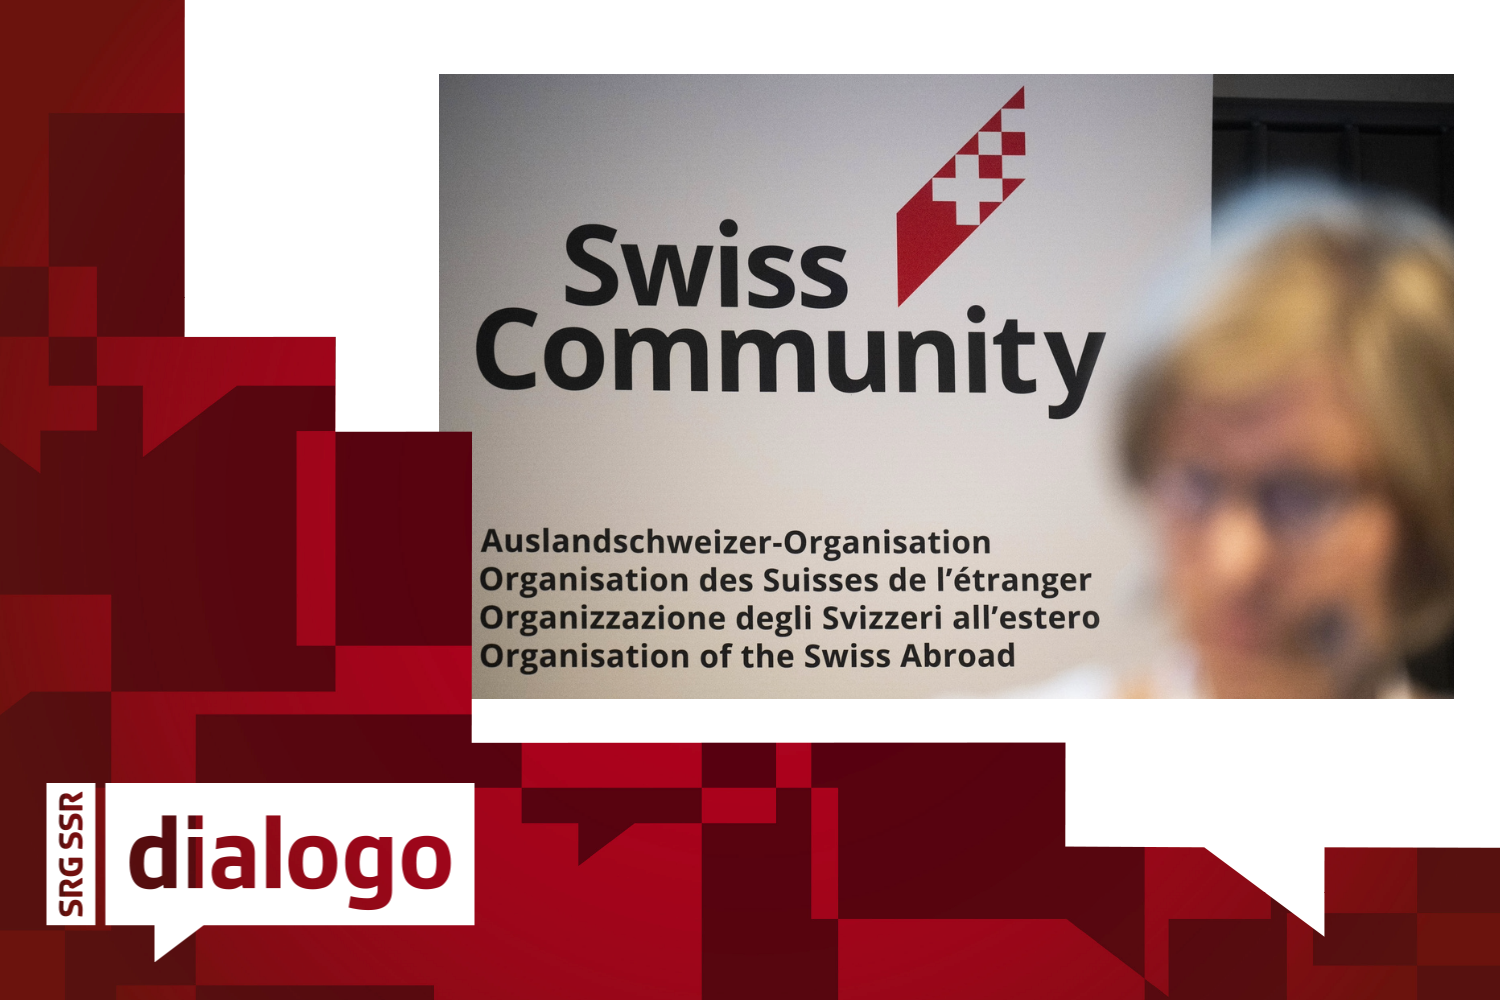 Logo di "Swiss-Community" nel Consiglio degli Svizzeri all'estero su uno striscione.